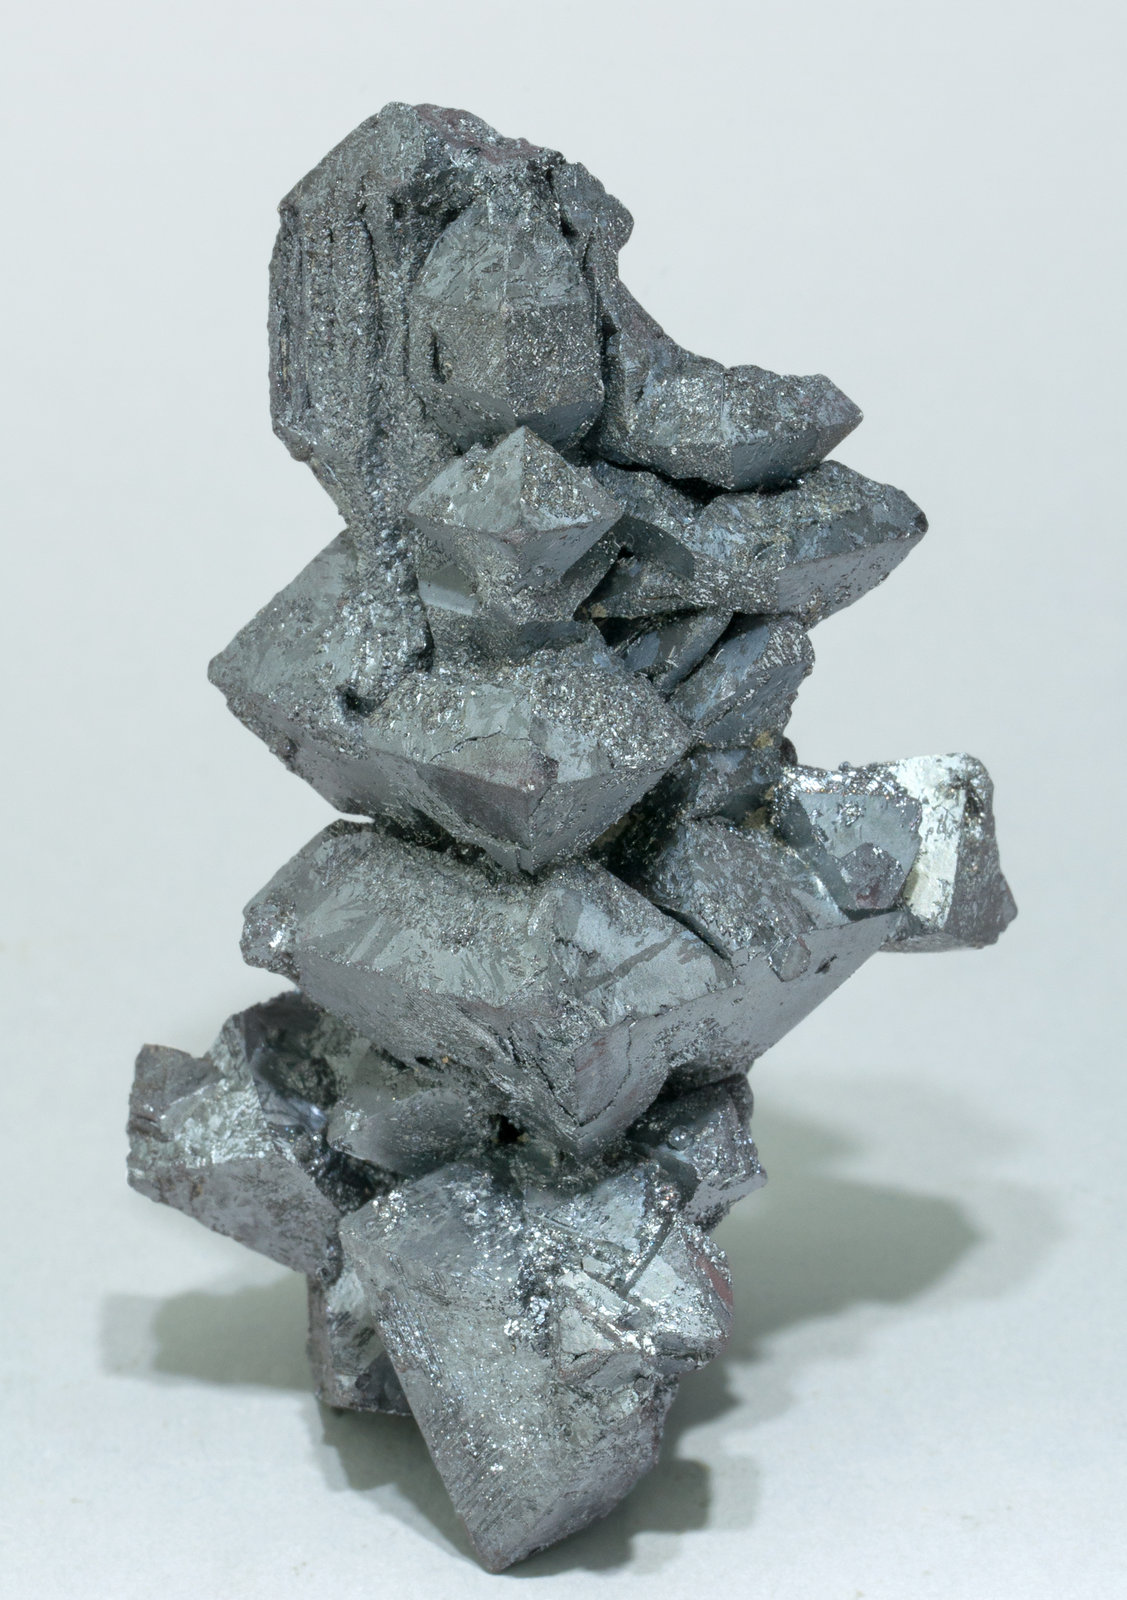 specimens/s_imagesZ1/Hematite-EJ64Z1f.jpg